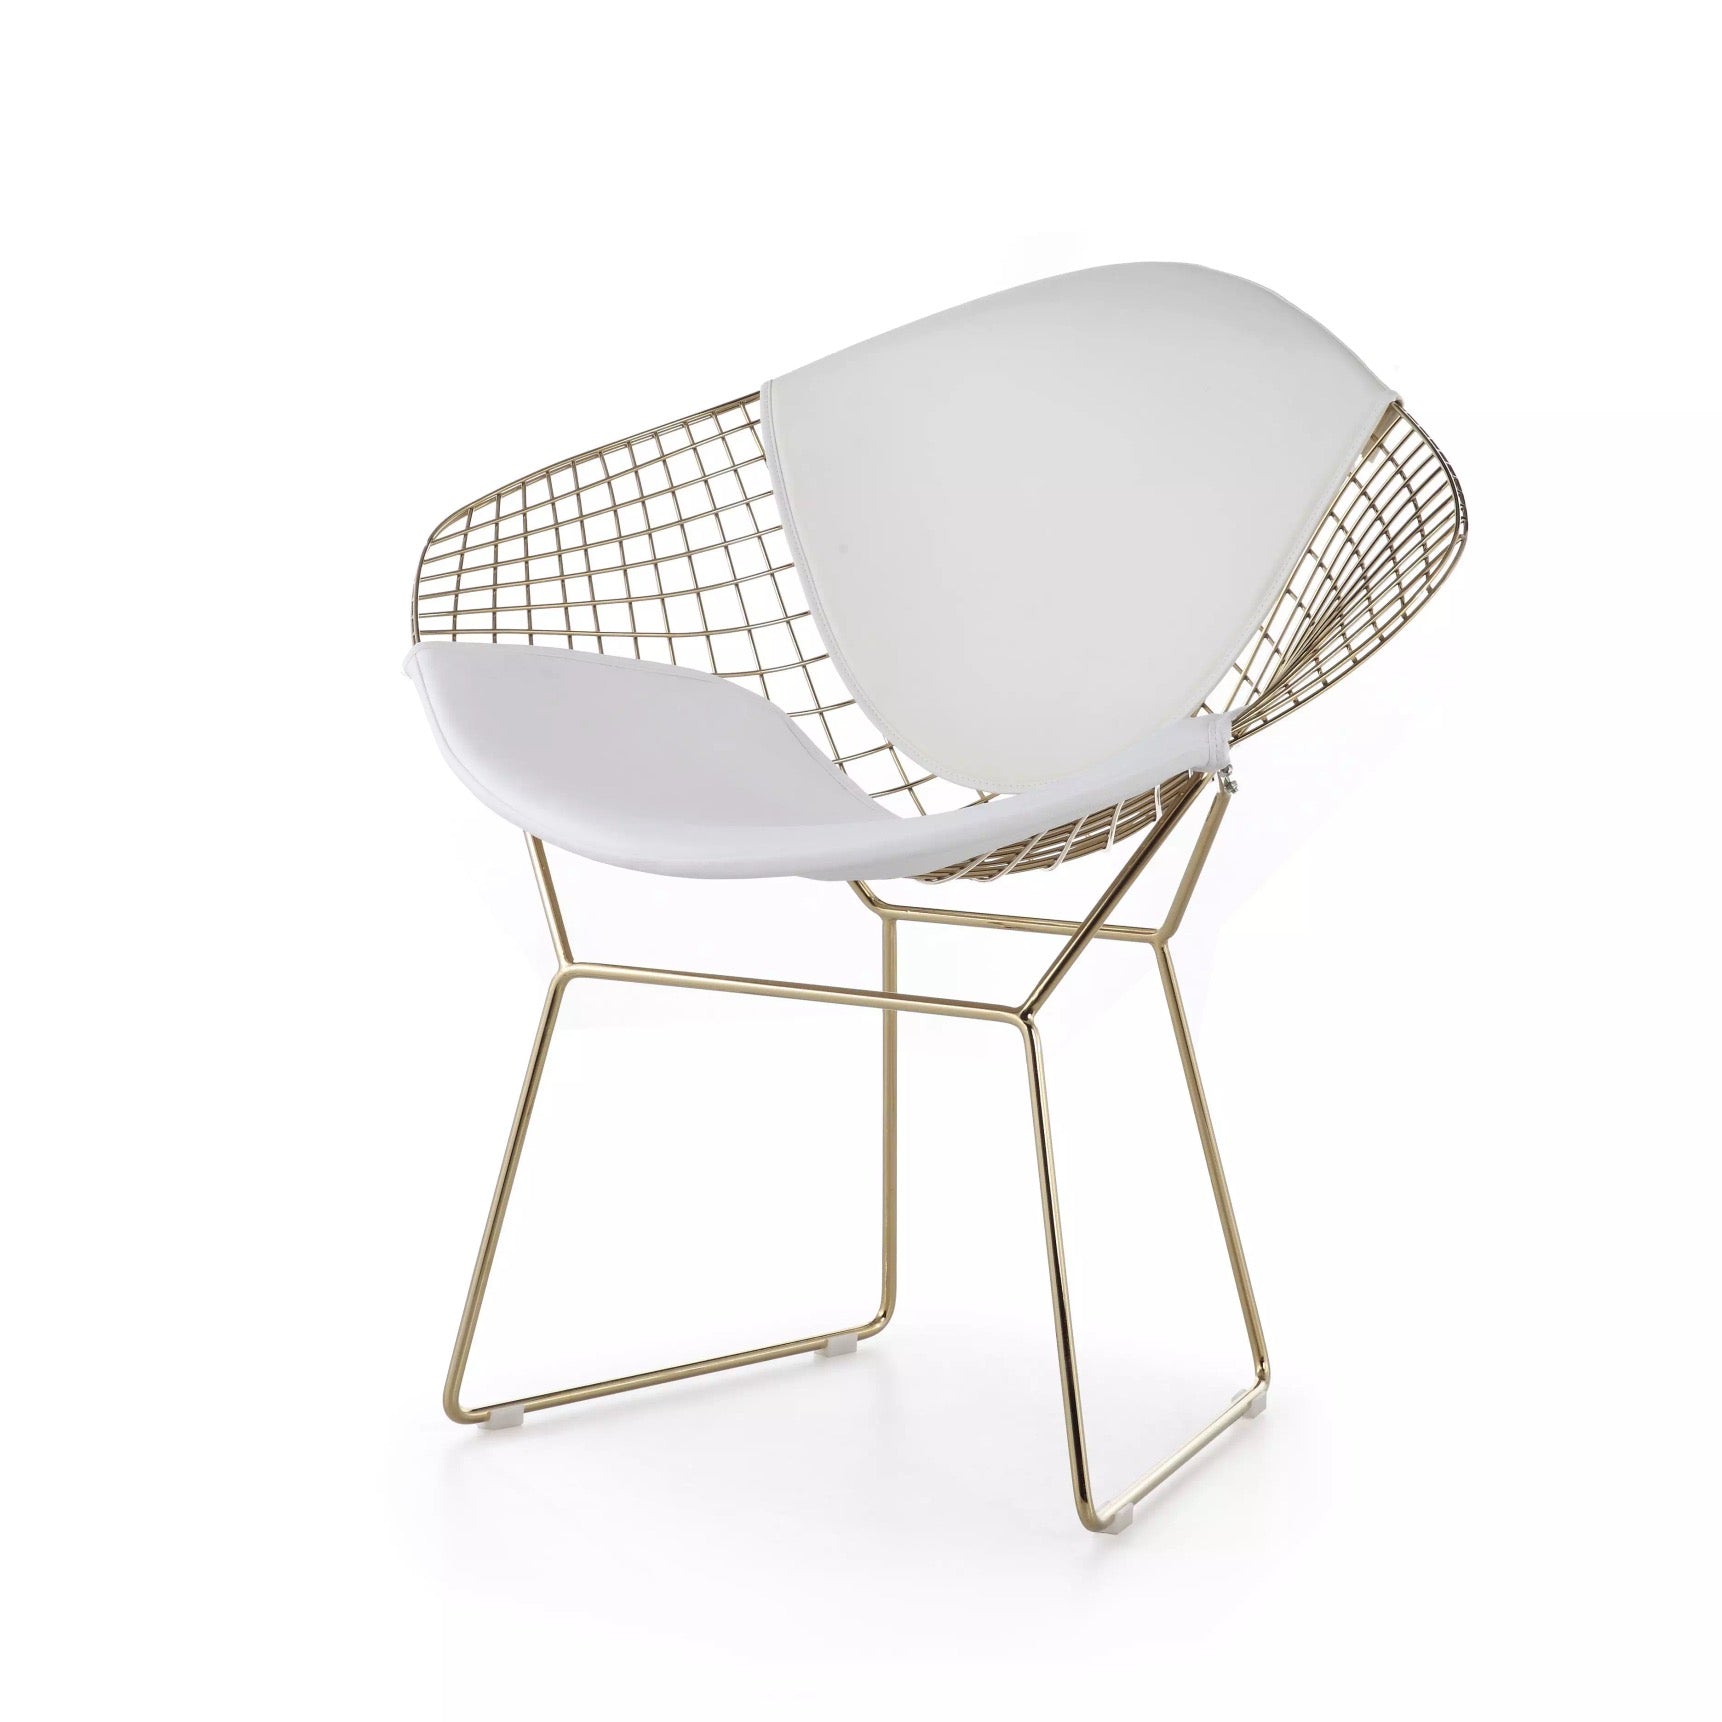 Dinning Room Chair Design Luxury Gold Stainless Steel Dinning Chair Home Restaurant Esszimmerstuhl